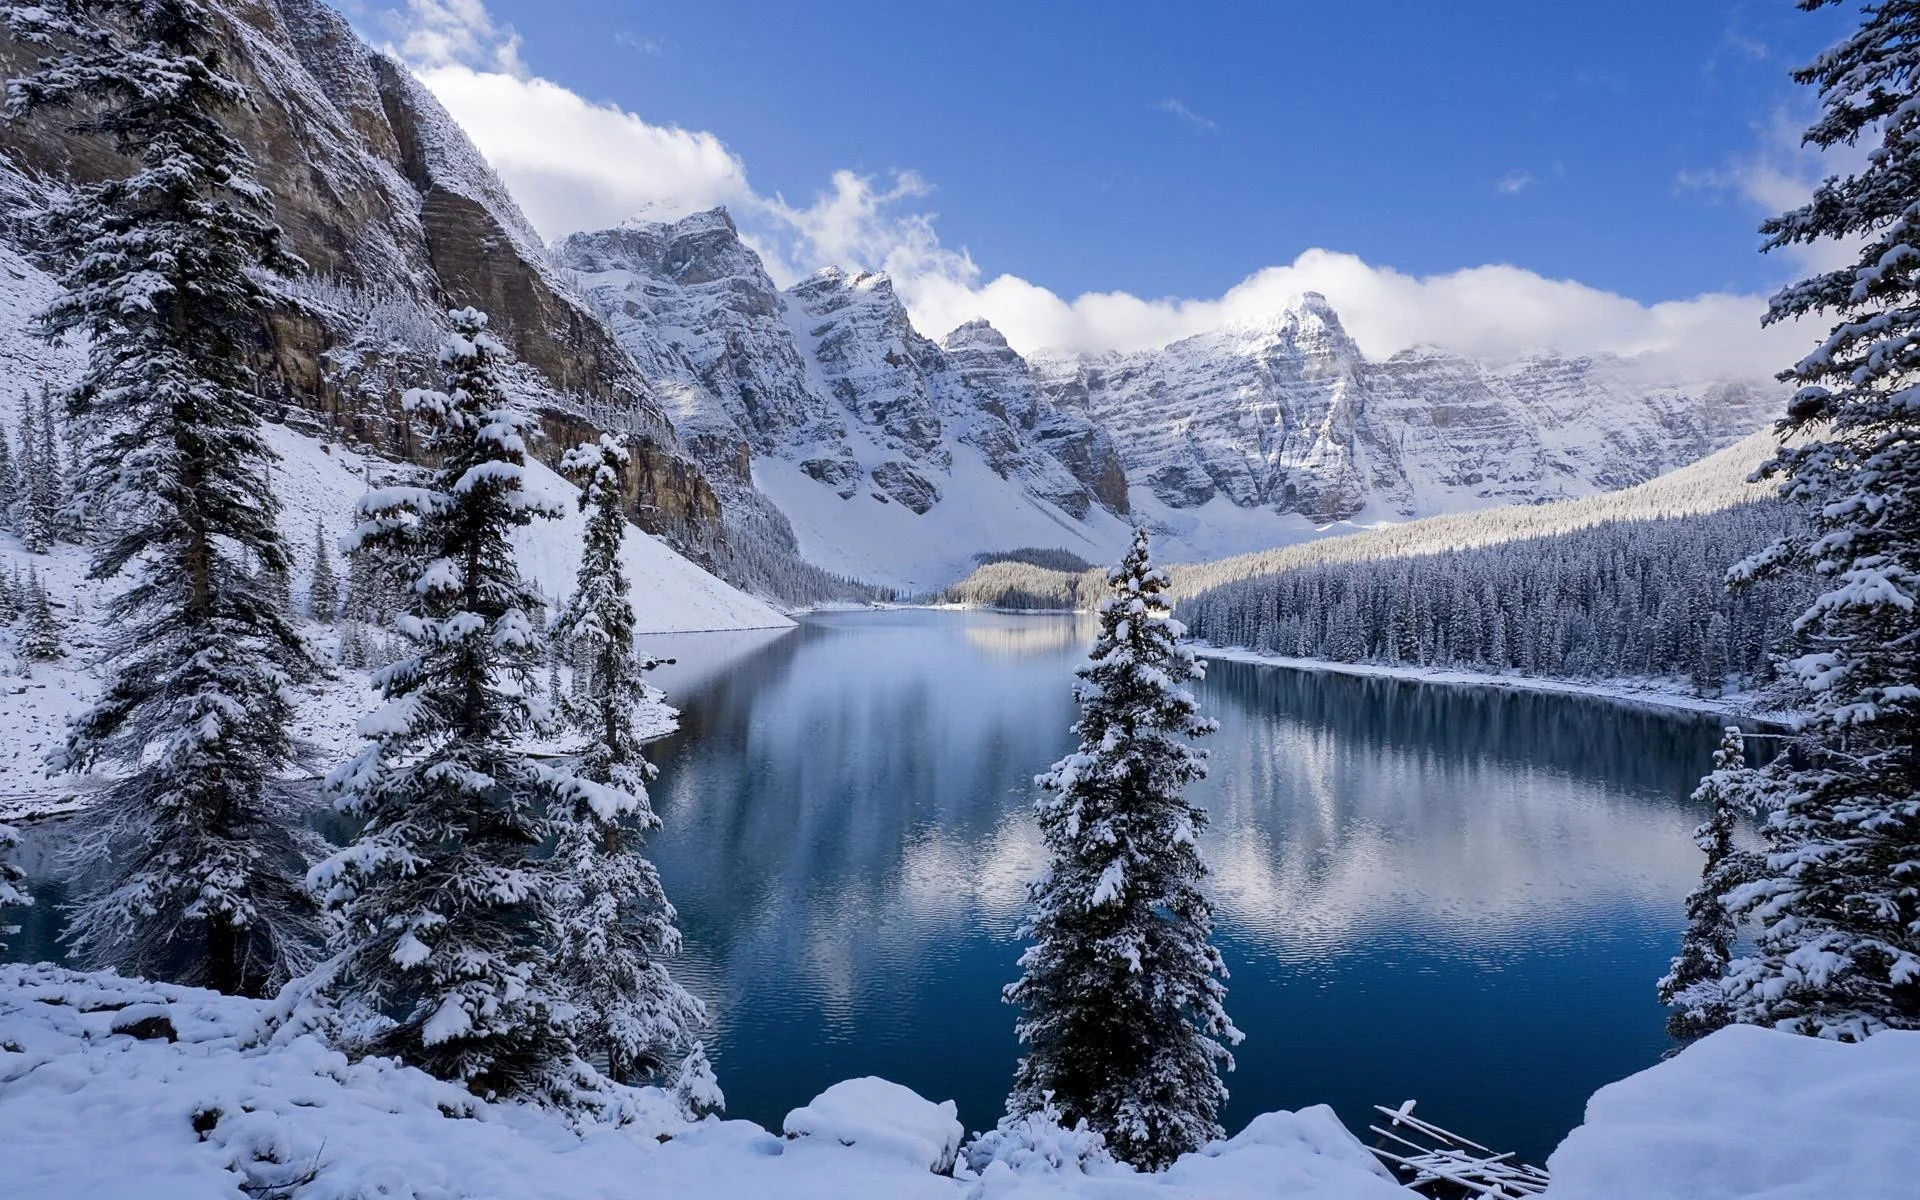 Winter Mountain Lake Scenes for Desktop Wallpapers HD